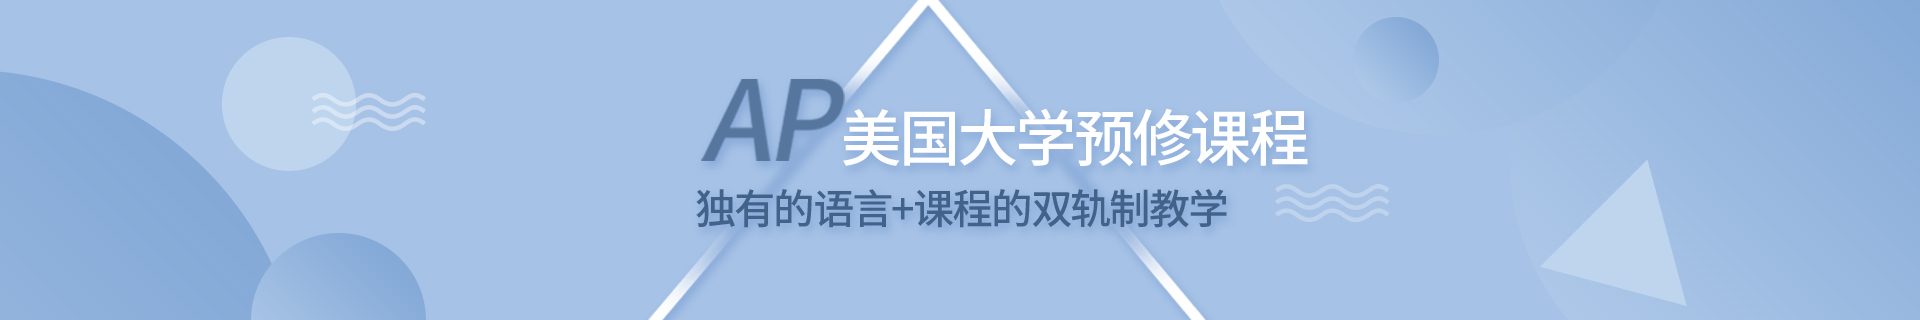 深圳南山环球教育培训机构